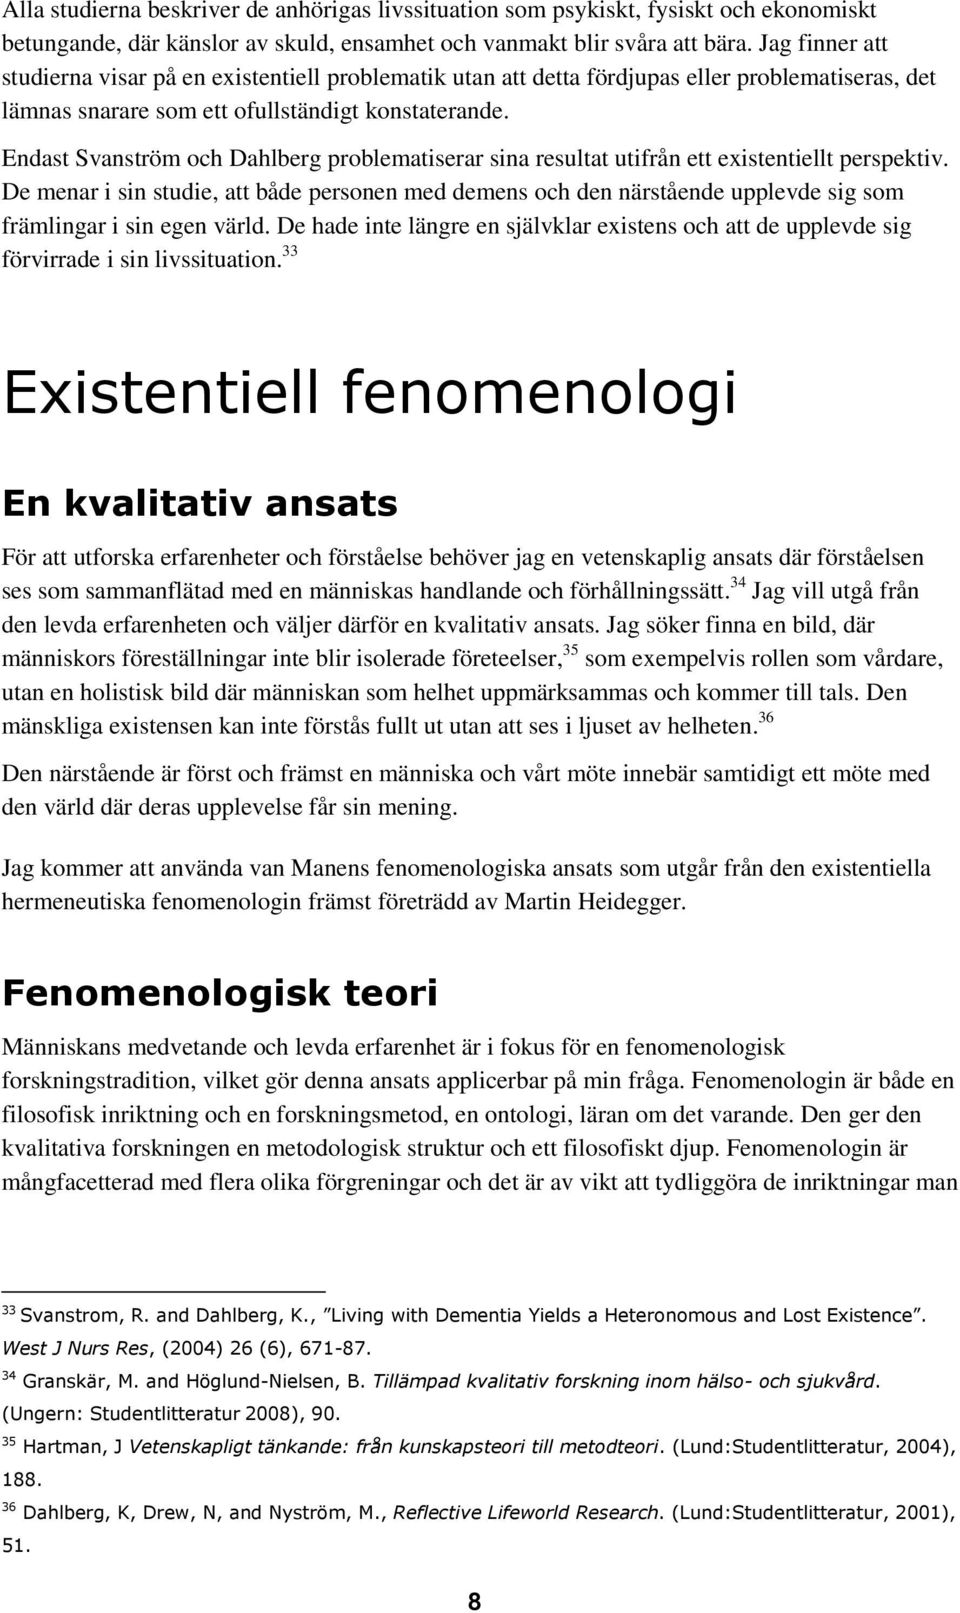 Endast Svanström och Dahlberg problematiserar sina resultat utifrån ett existentiellt perspektiv.